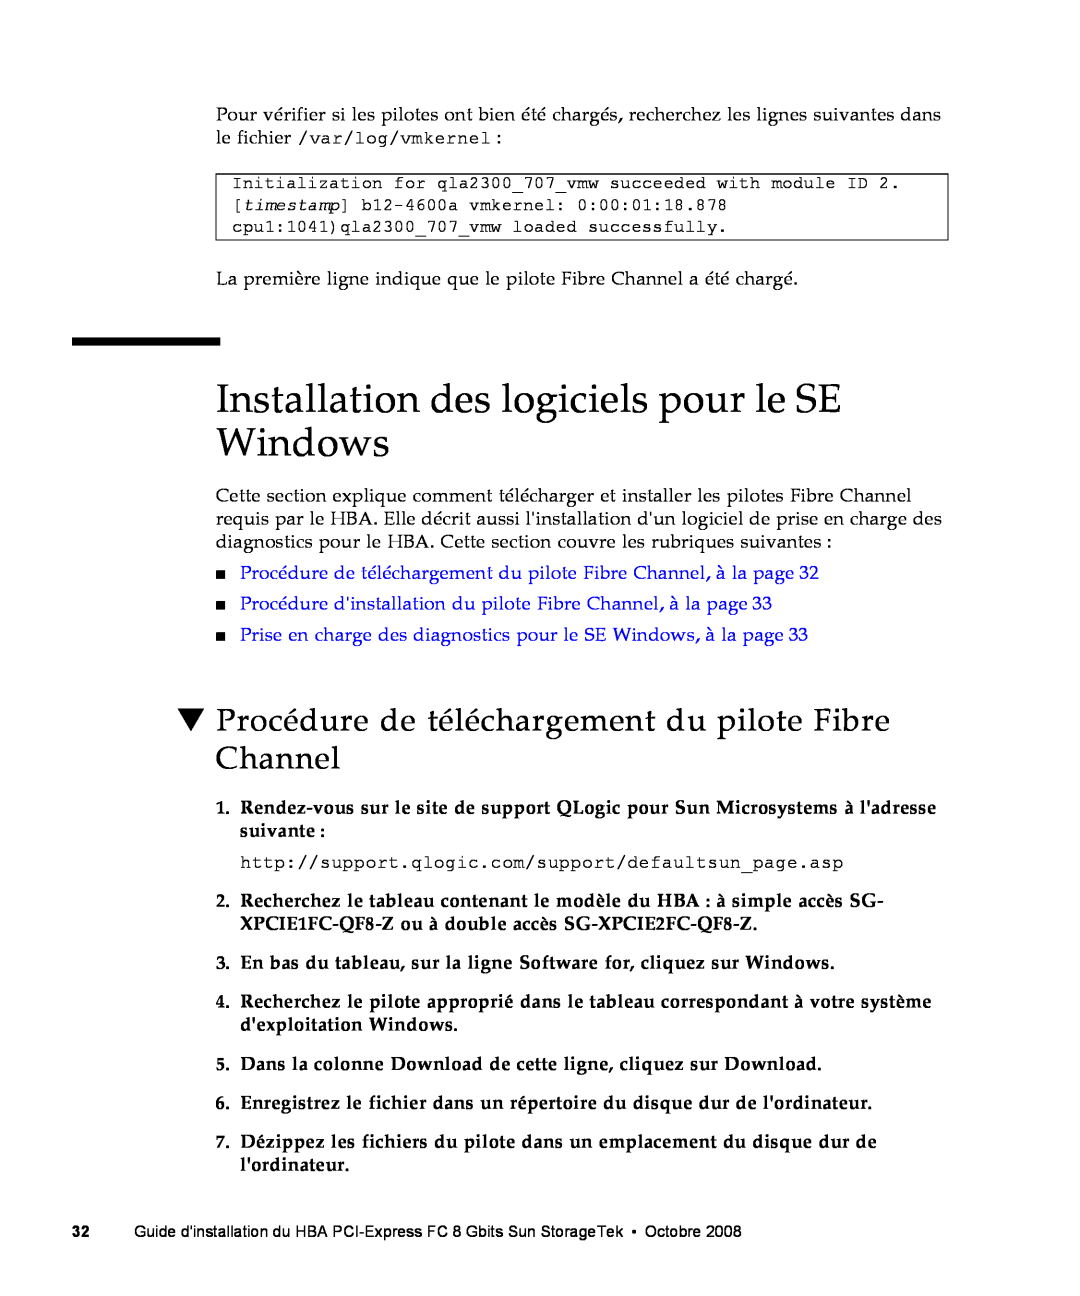 Sun Microsystems SG-XPCIE2FC-QF8-Z, SG-XPCIE1FC-QF8-Z manual Installation des logiciels pour le SE Windows 